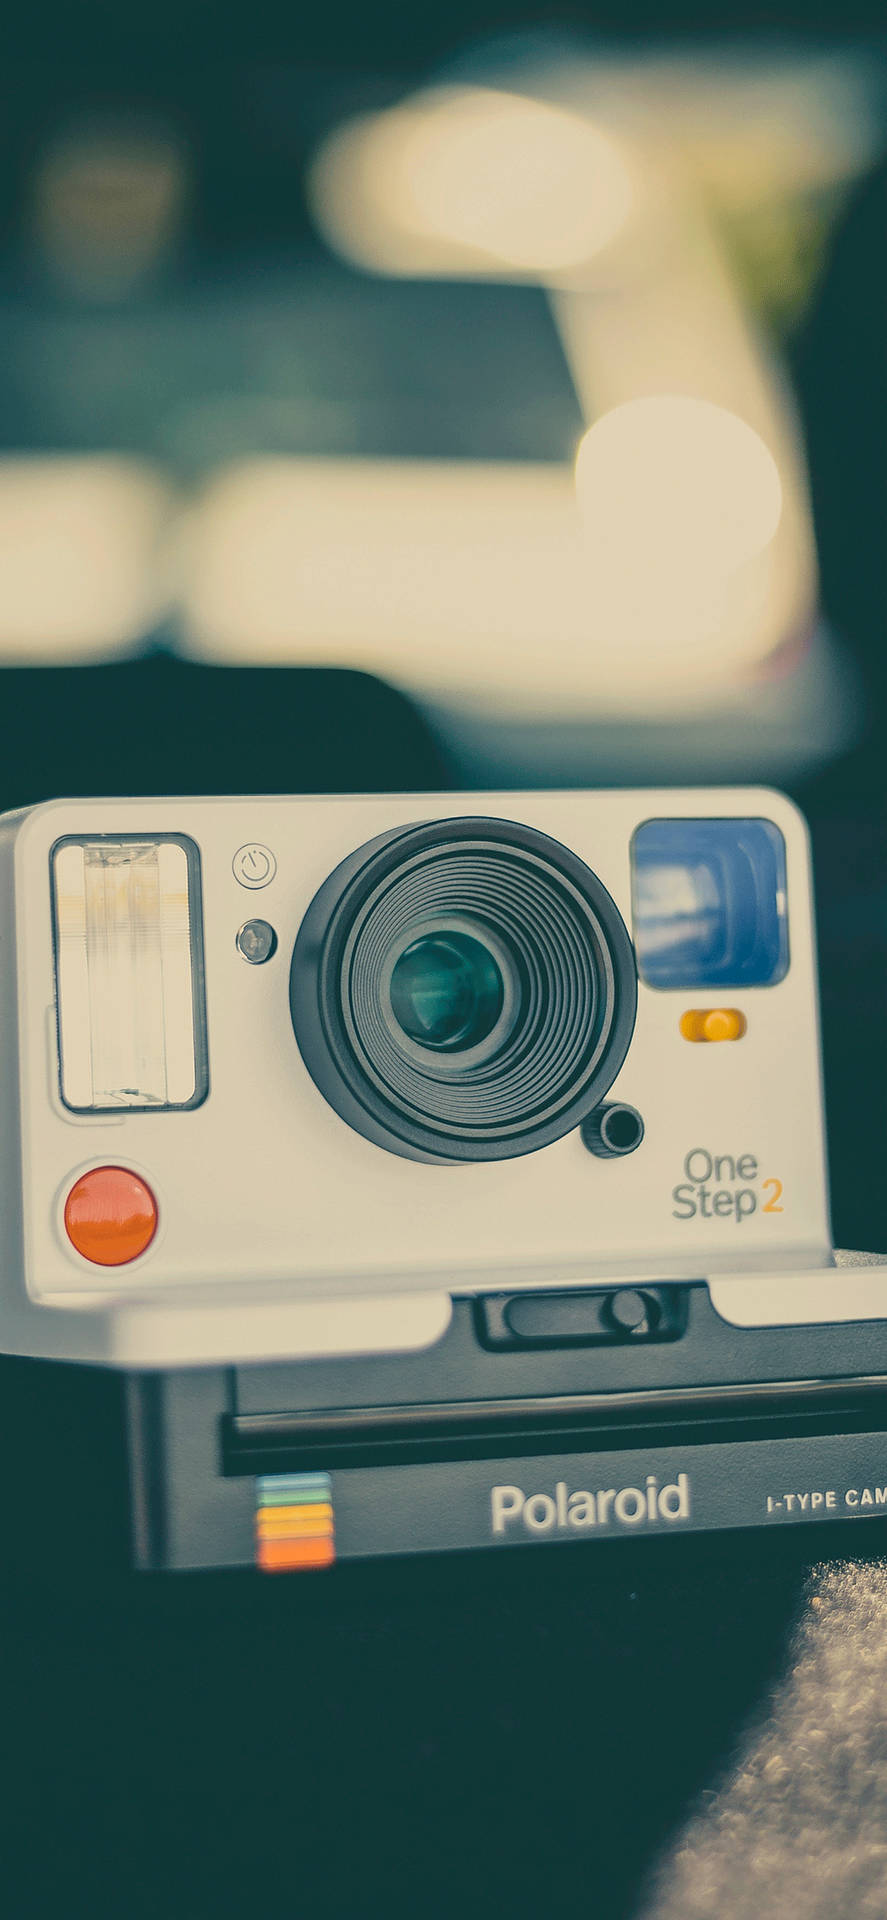 Polaroid Camera Retro Aesthetic Iphone Wallpaper